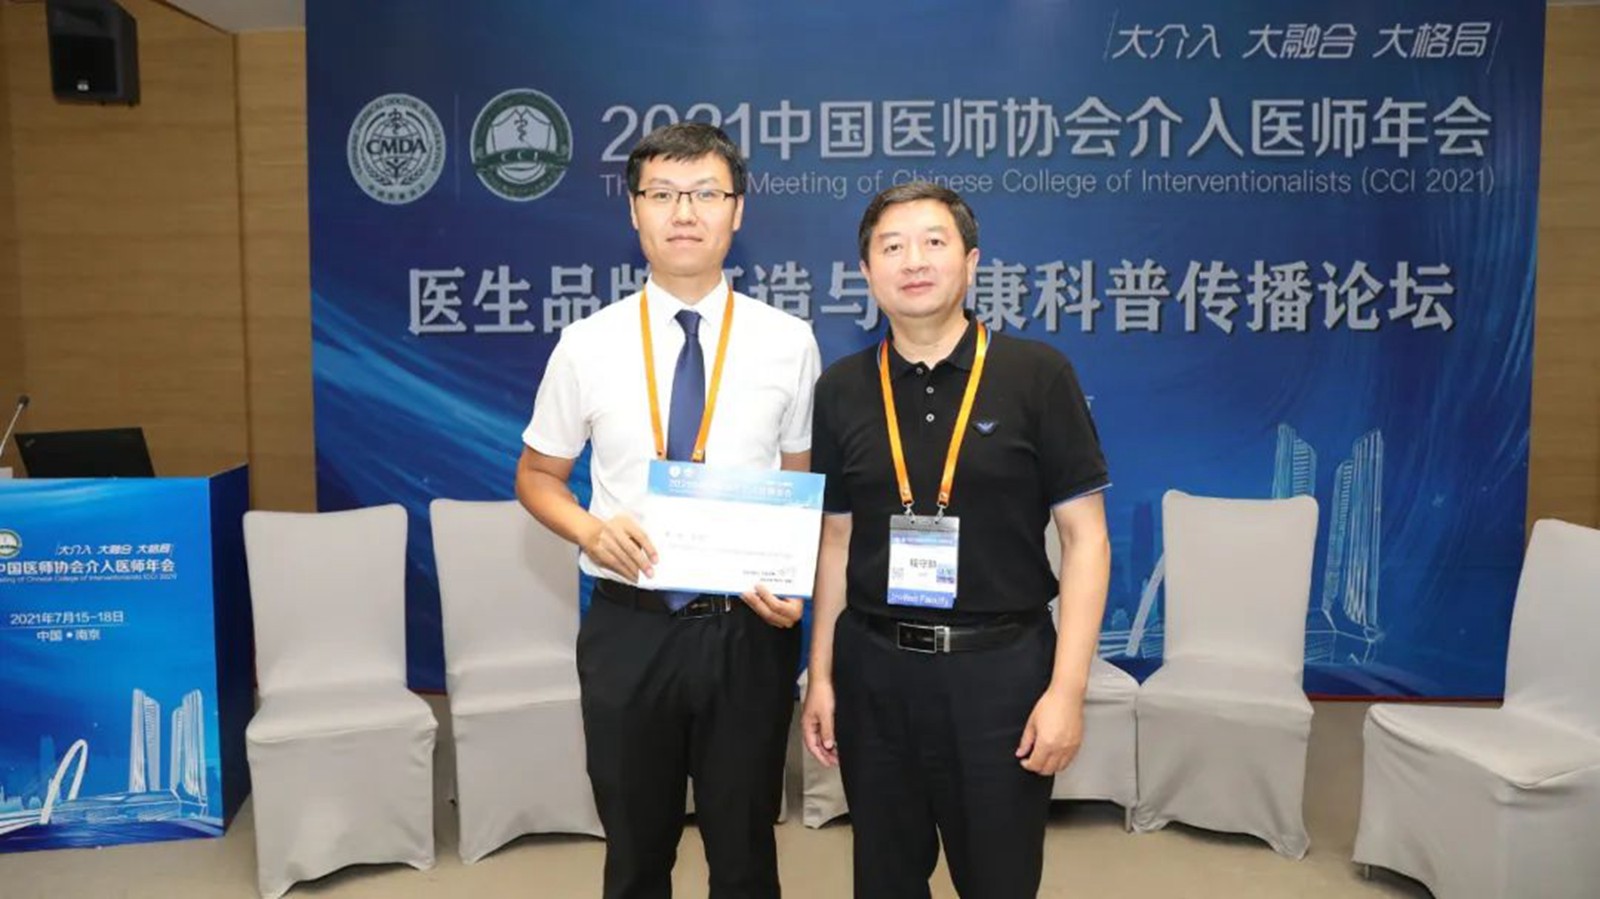 薛明荣获2021年中国医师协会介入医师年会科普大赛“最具传播力奖”